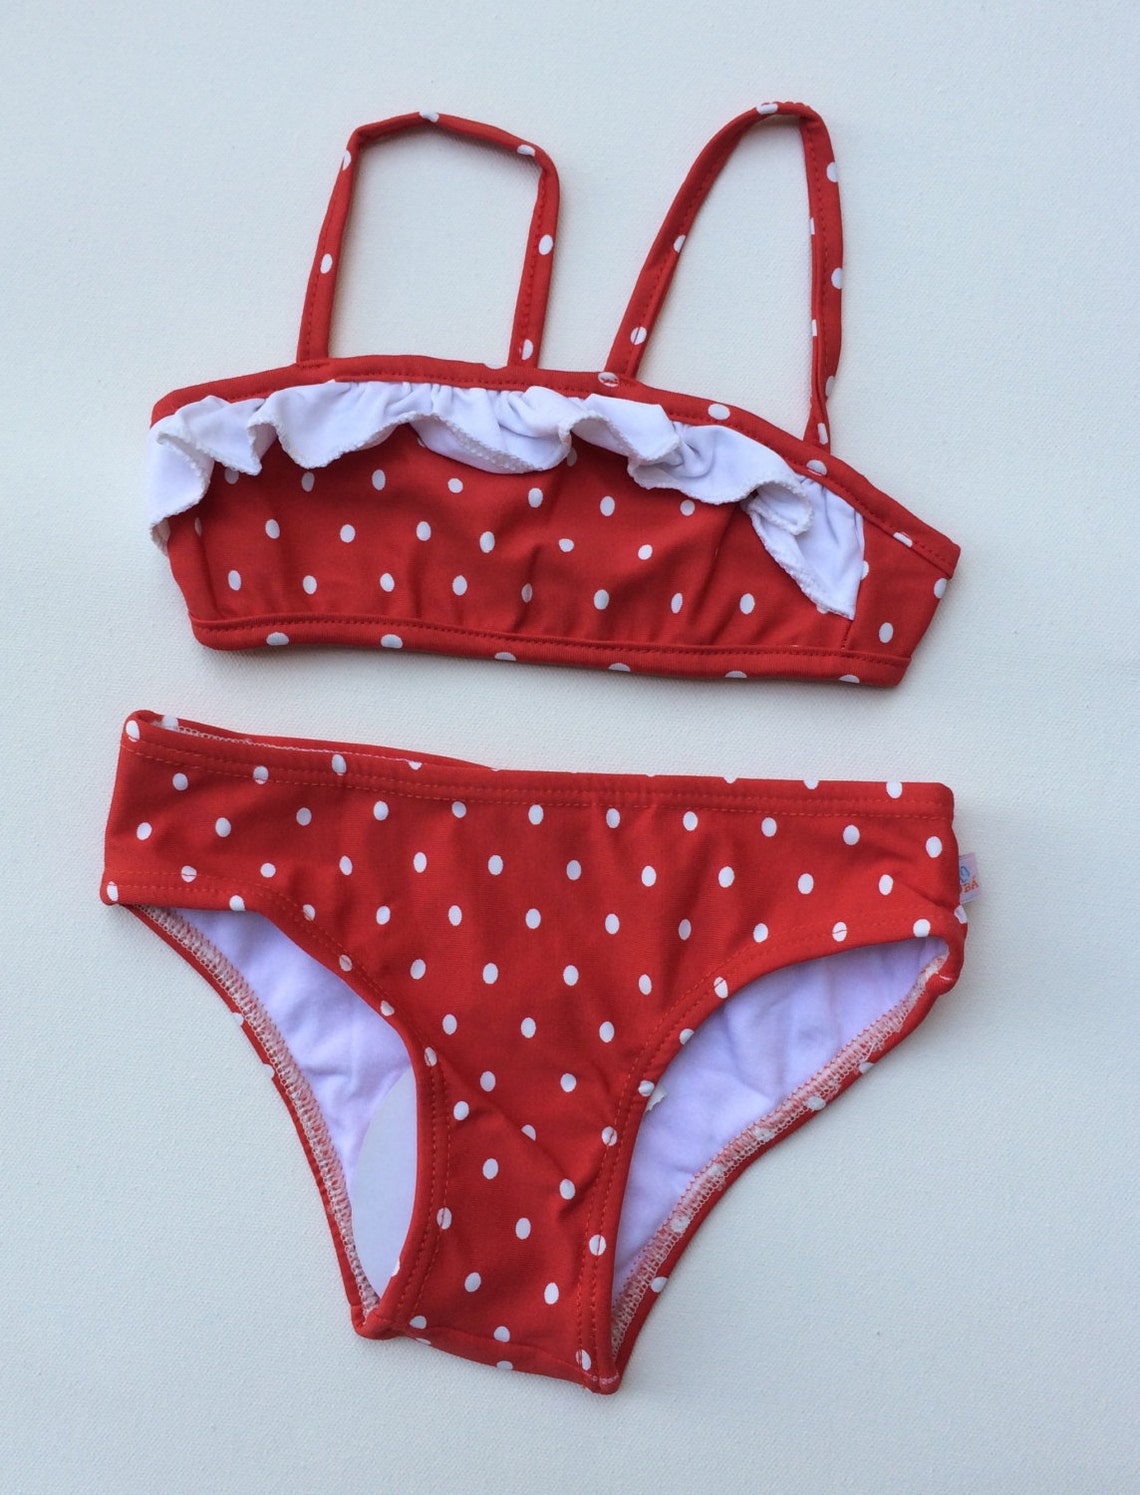 Red Polka Dot Bikini childrens Size 4 | Etsy